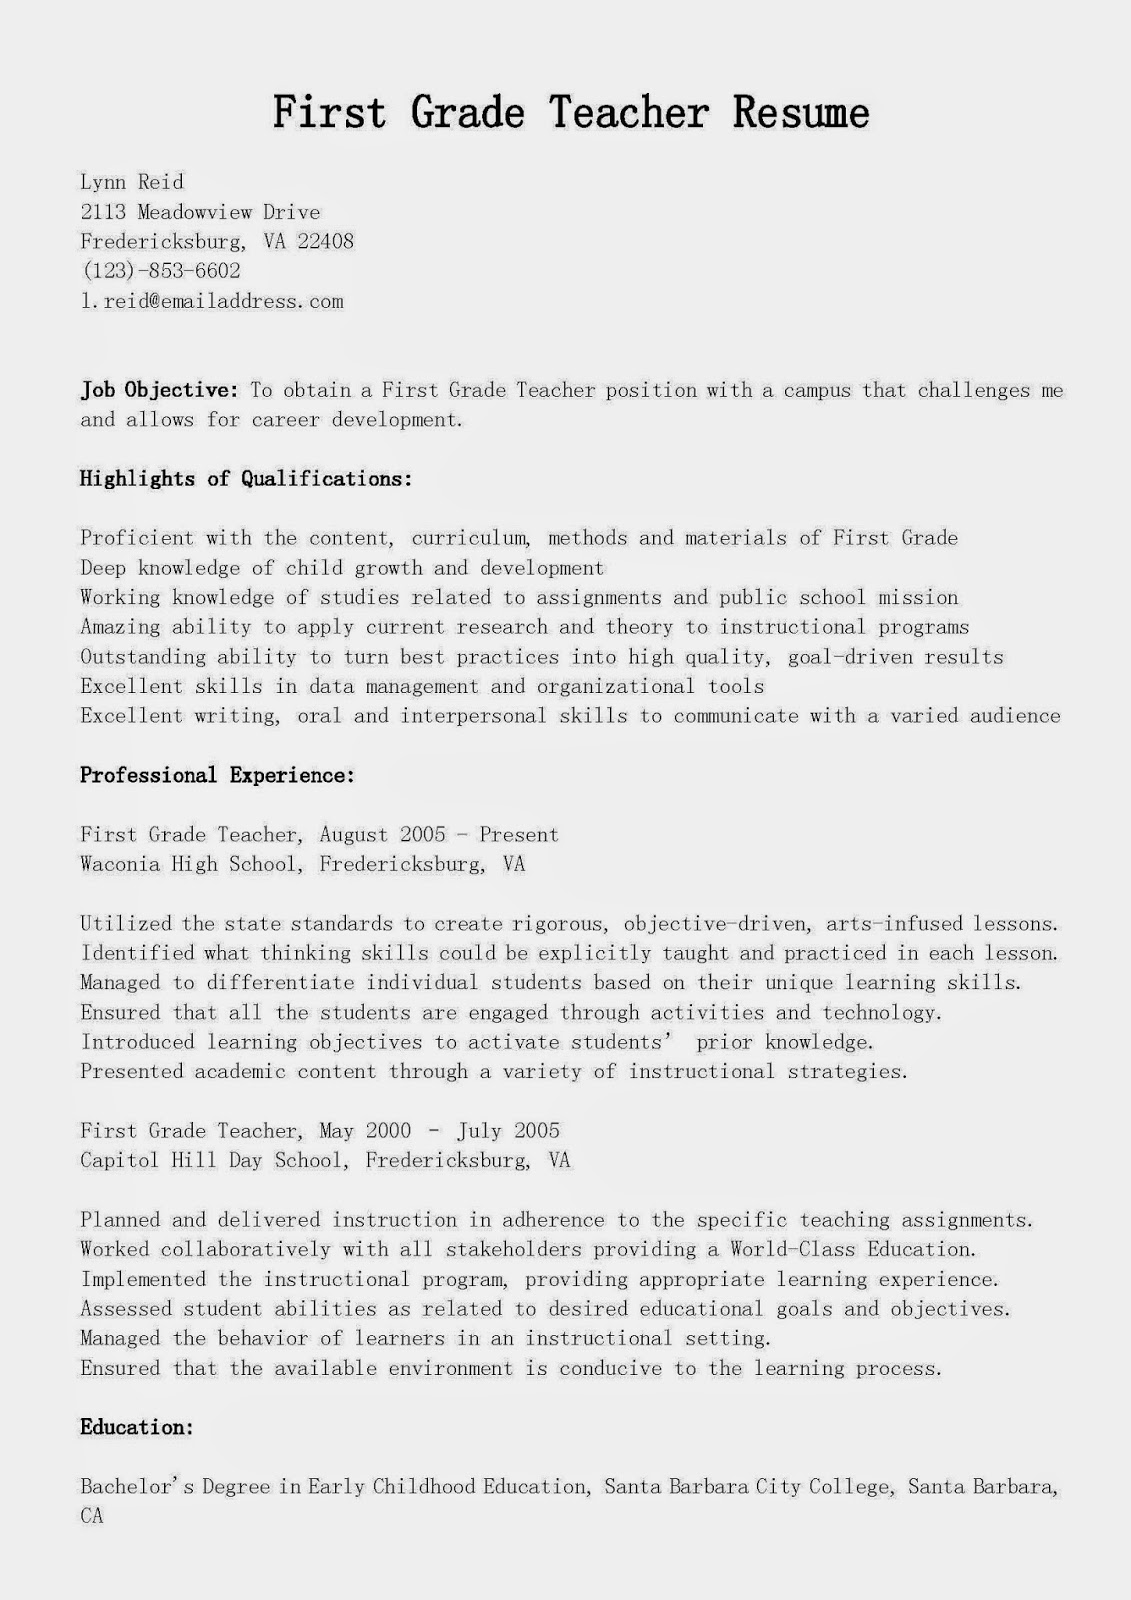 Functional resume worksheet